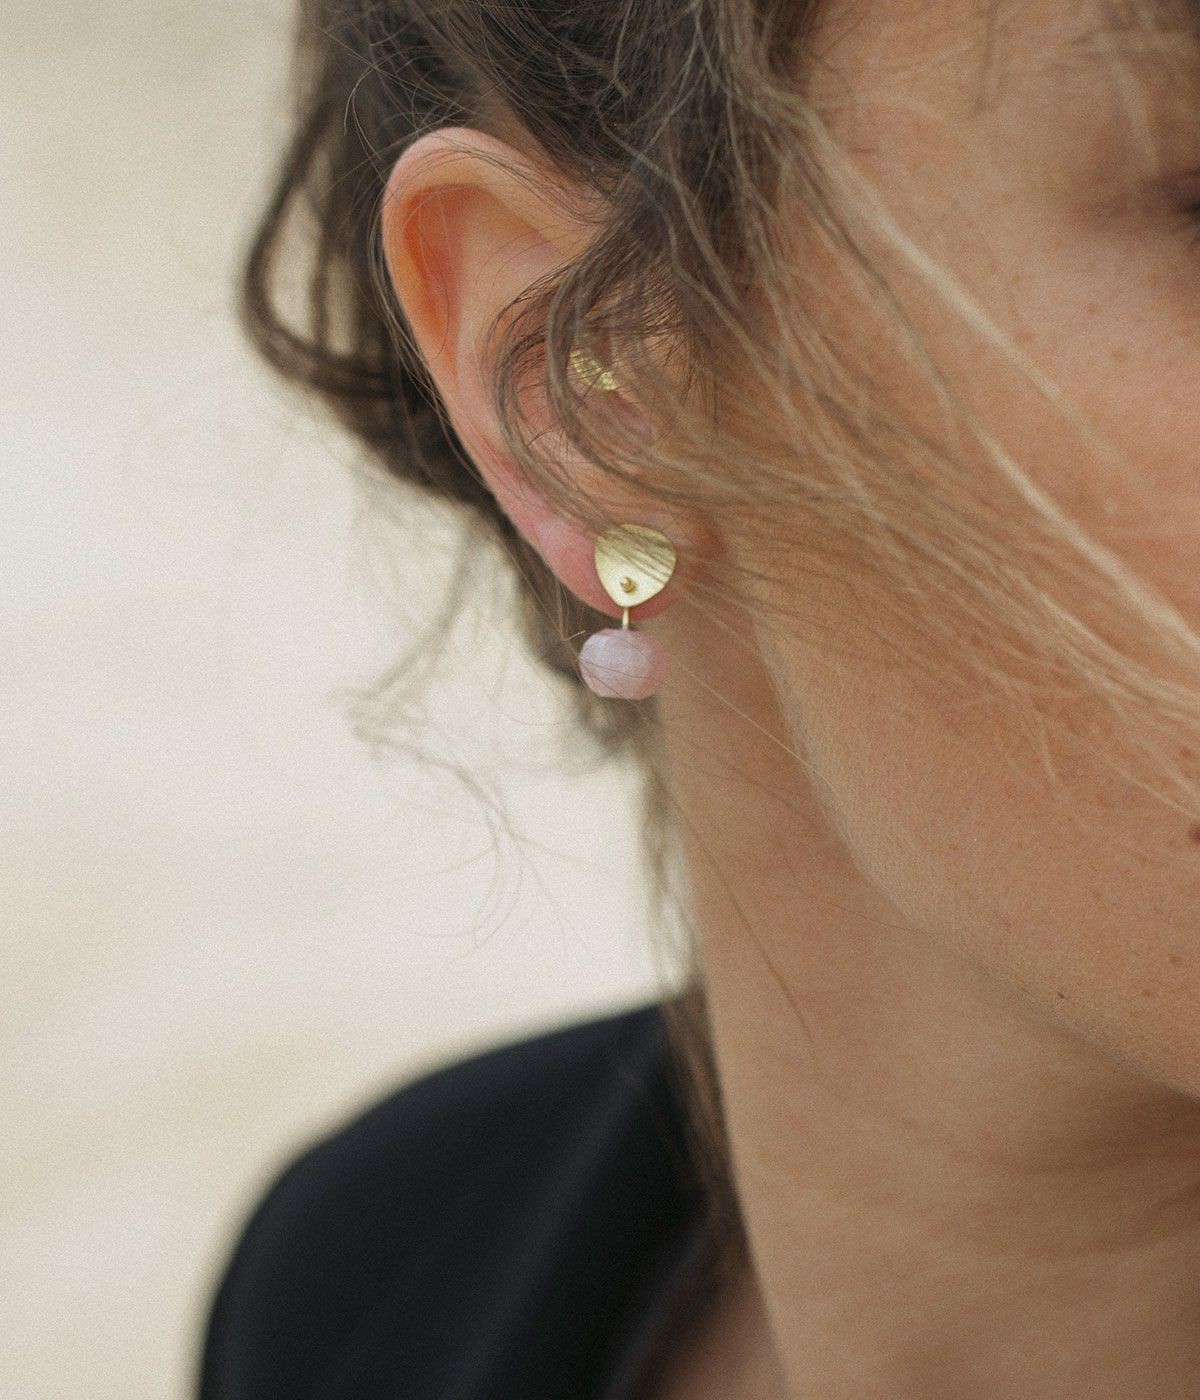 Supple Pink earrings